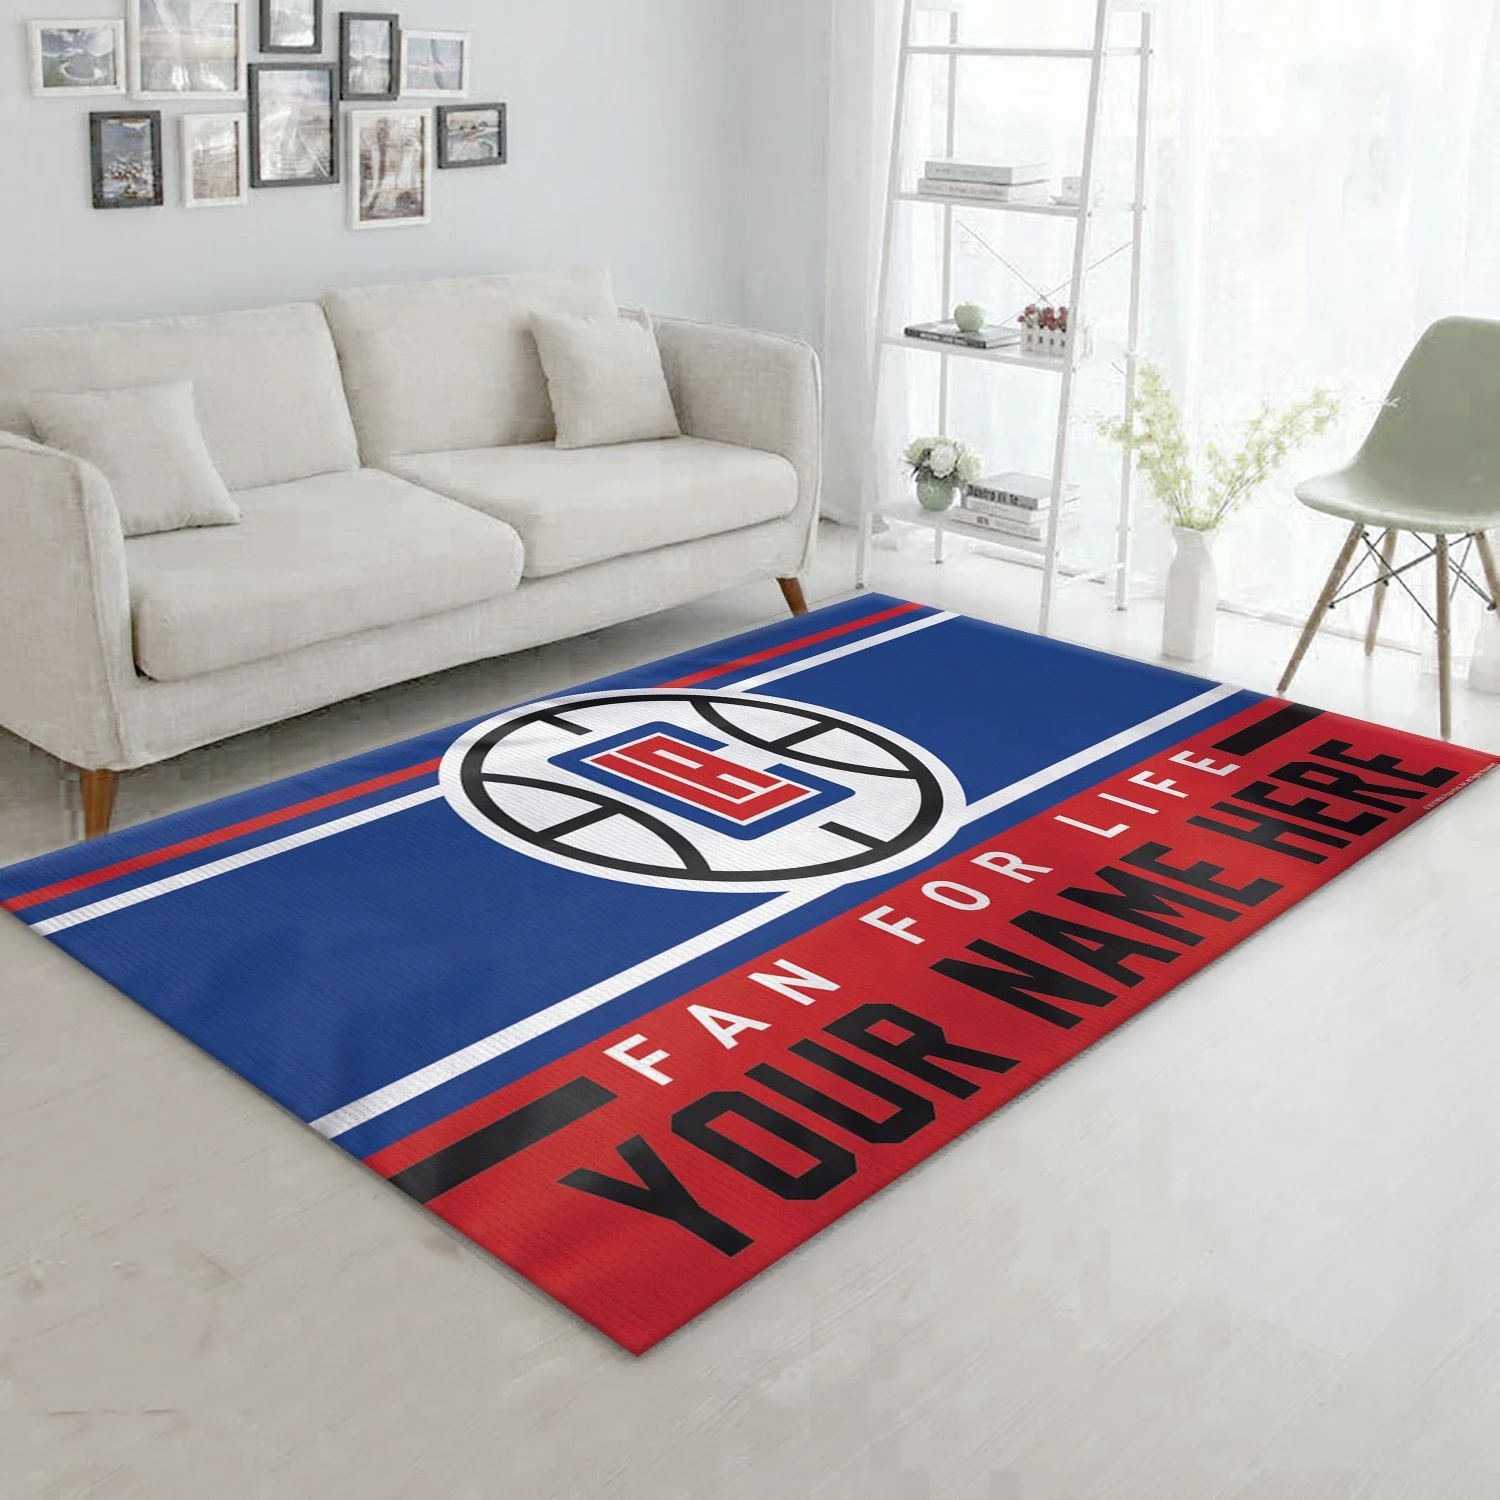 La Clippers NBA Area Rug Carpet